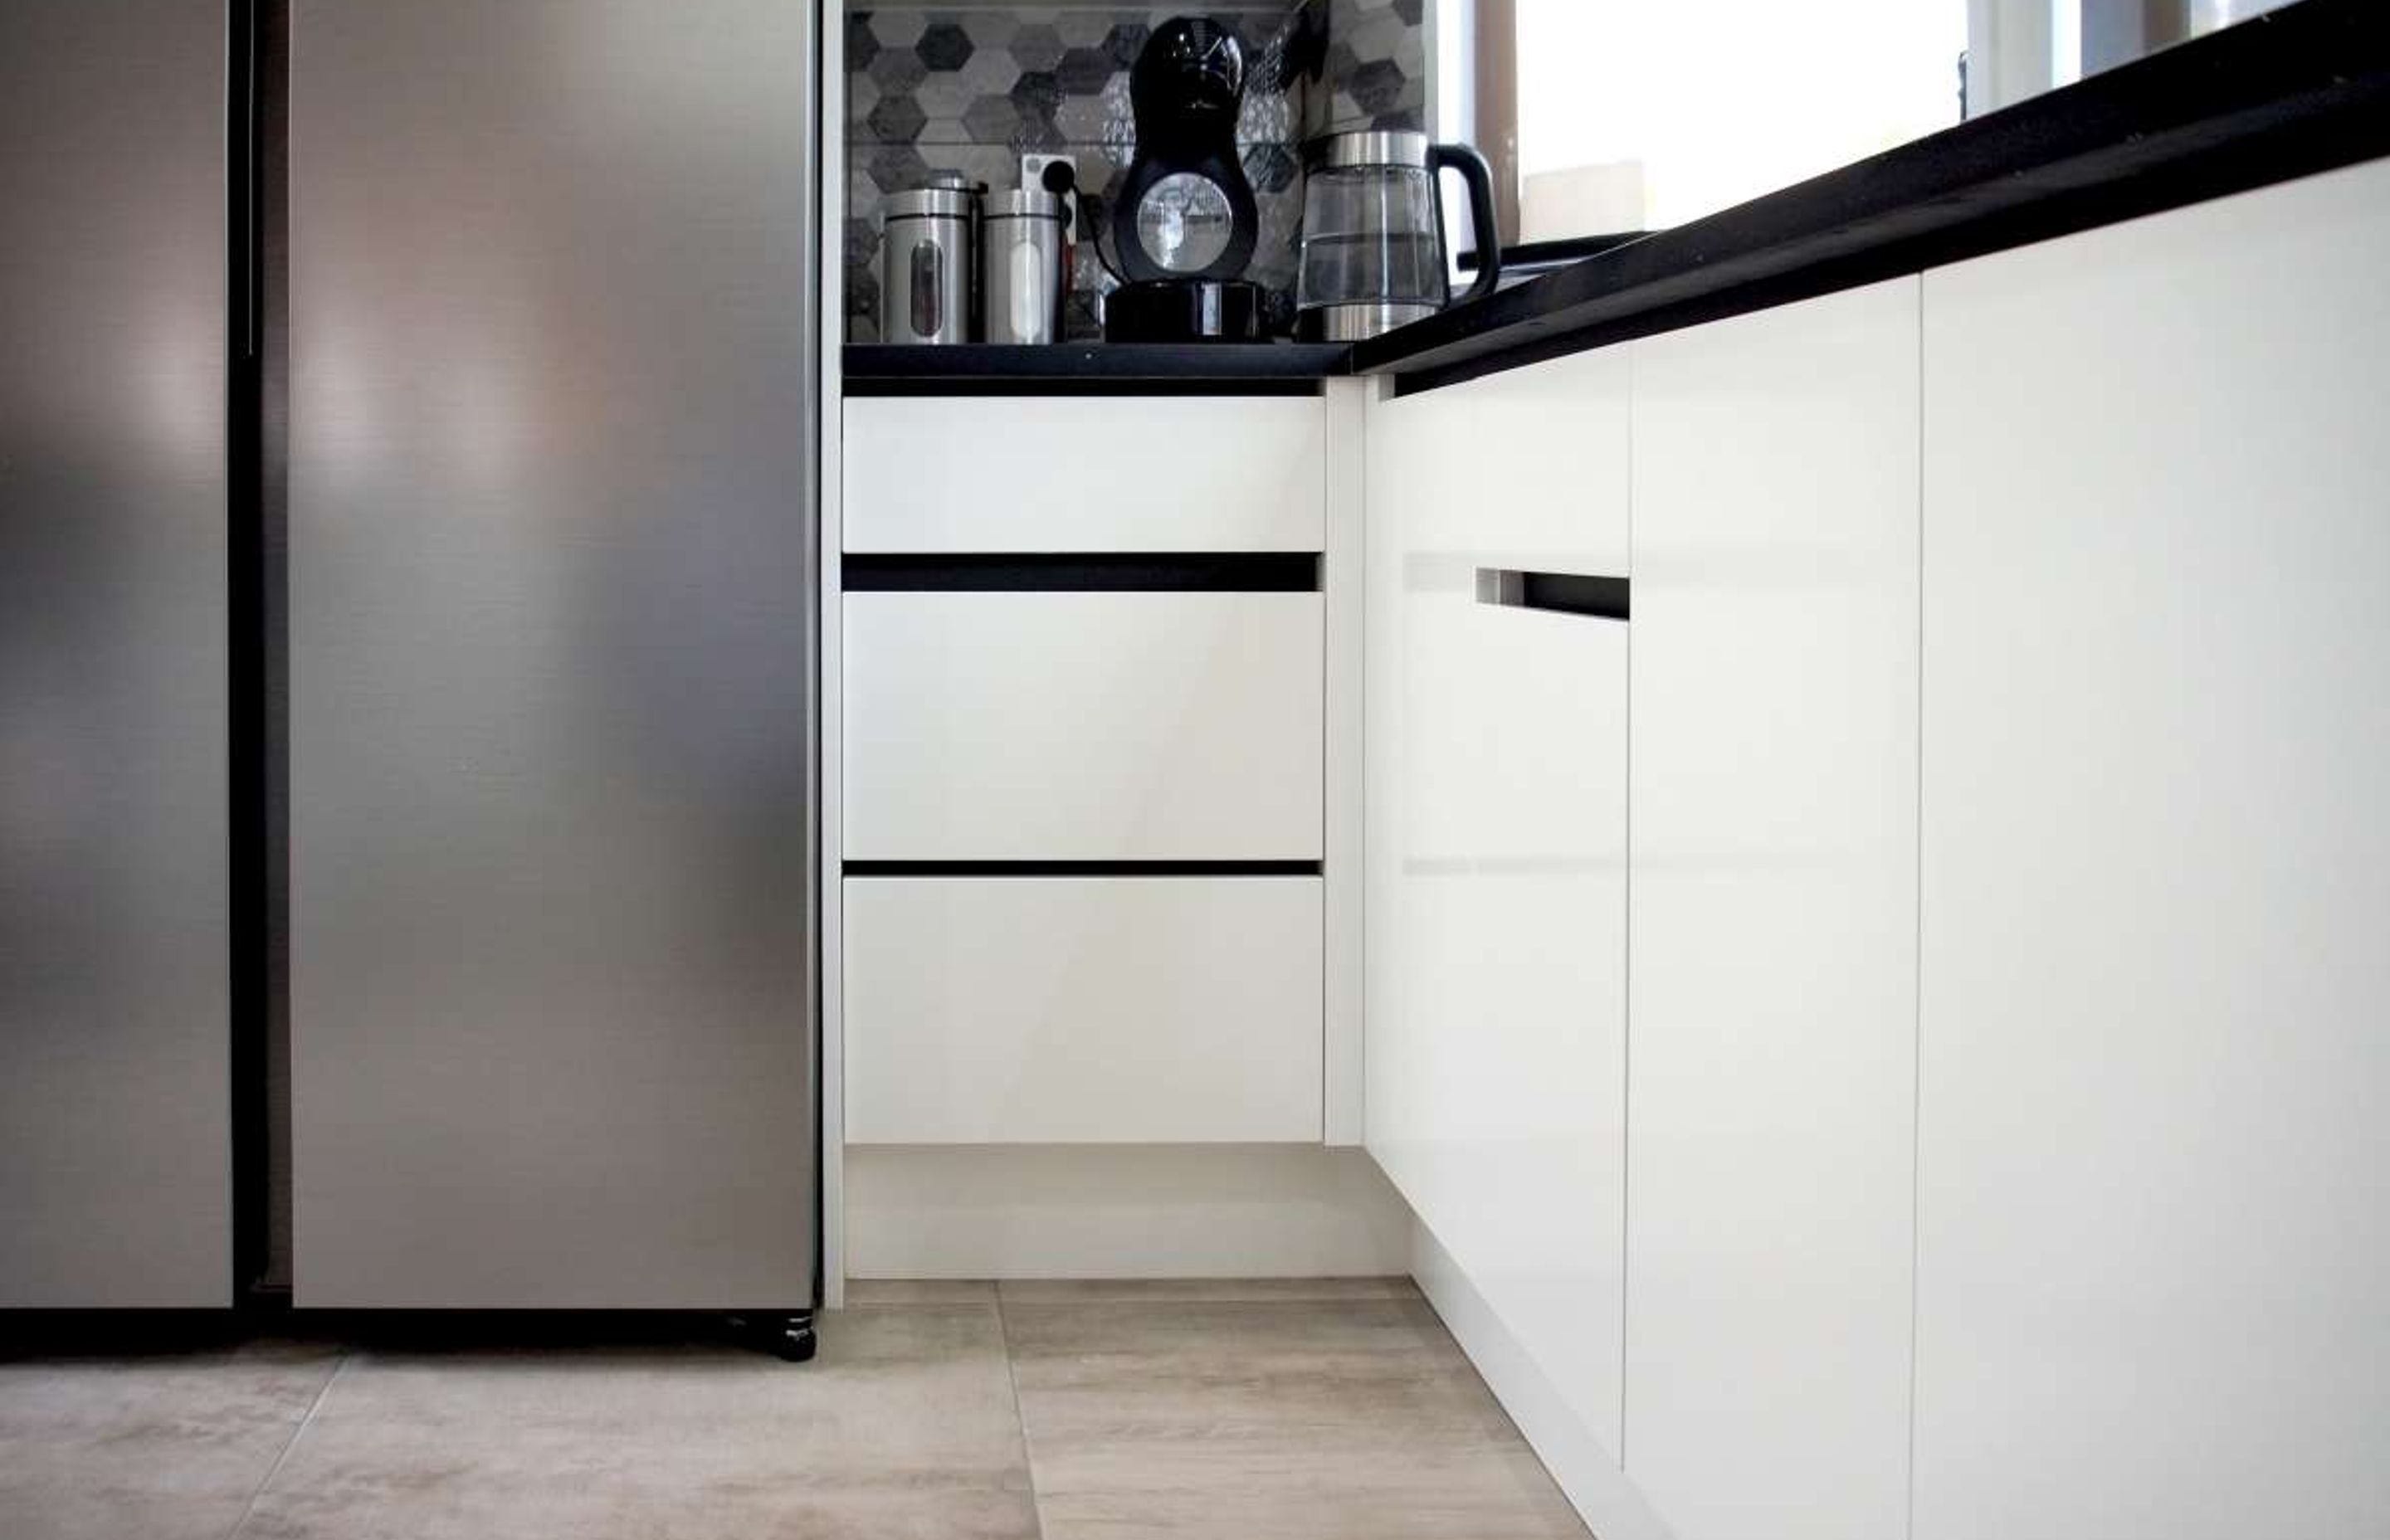 Retro Style Black and White Kitchen